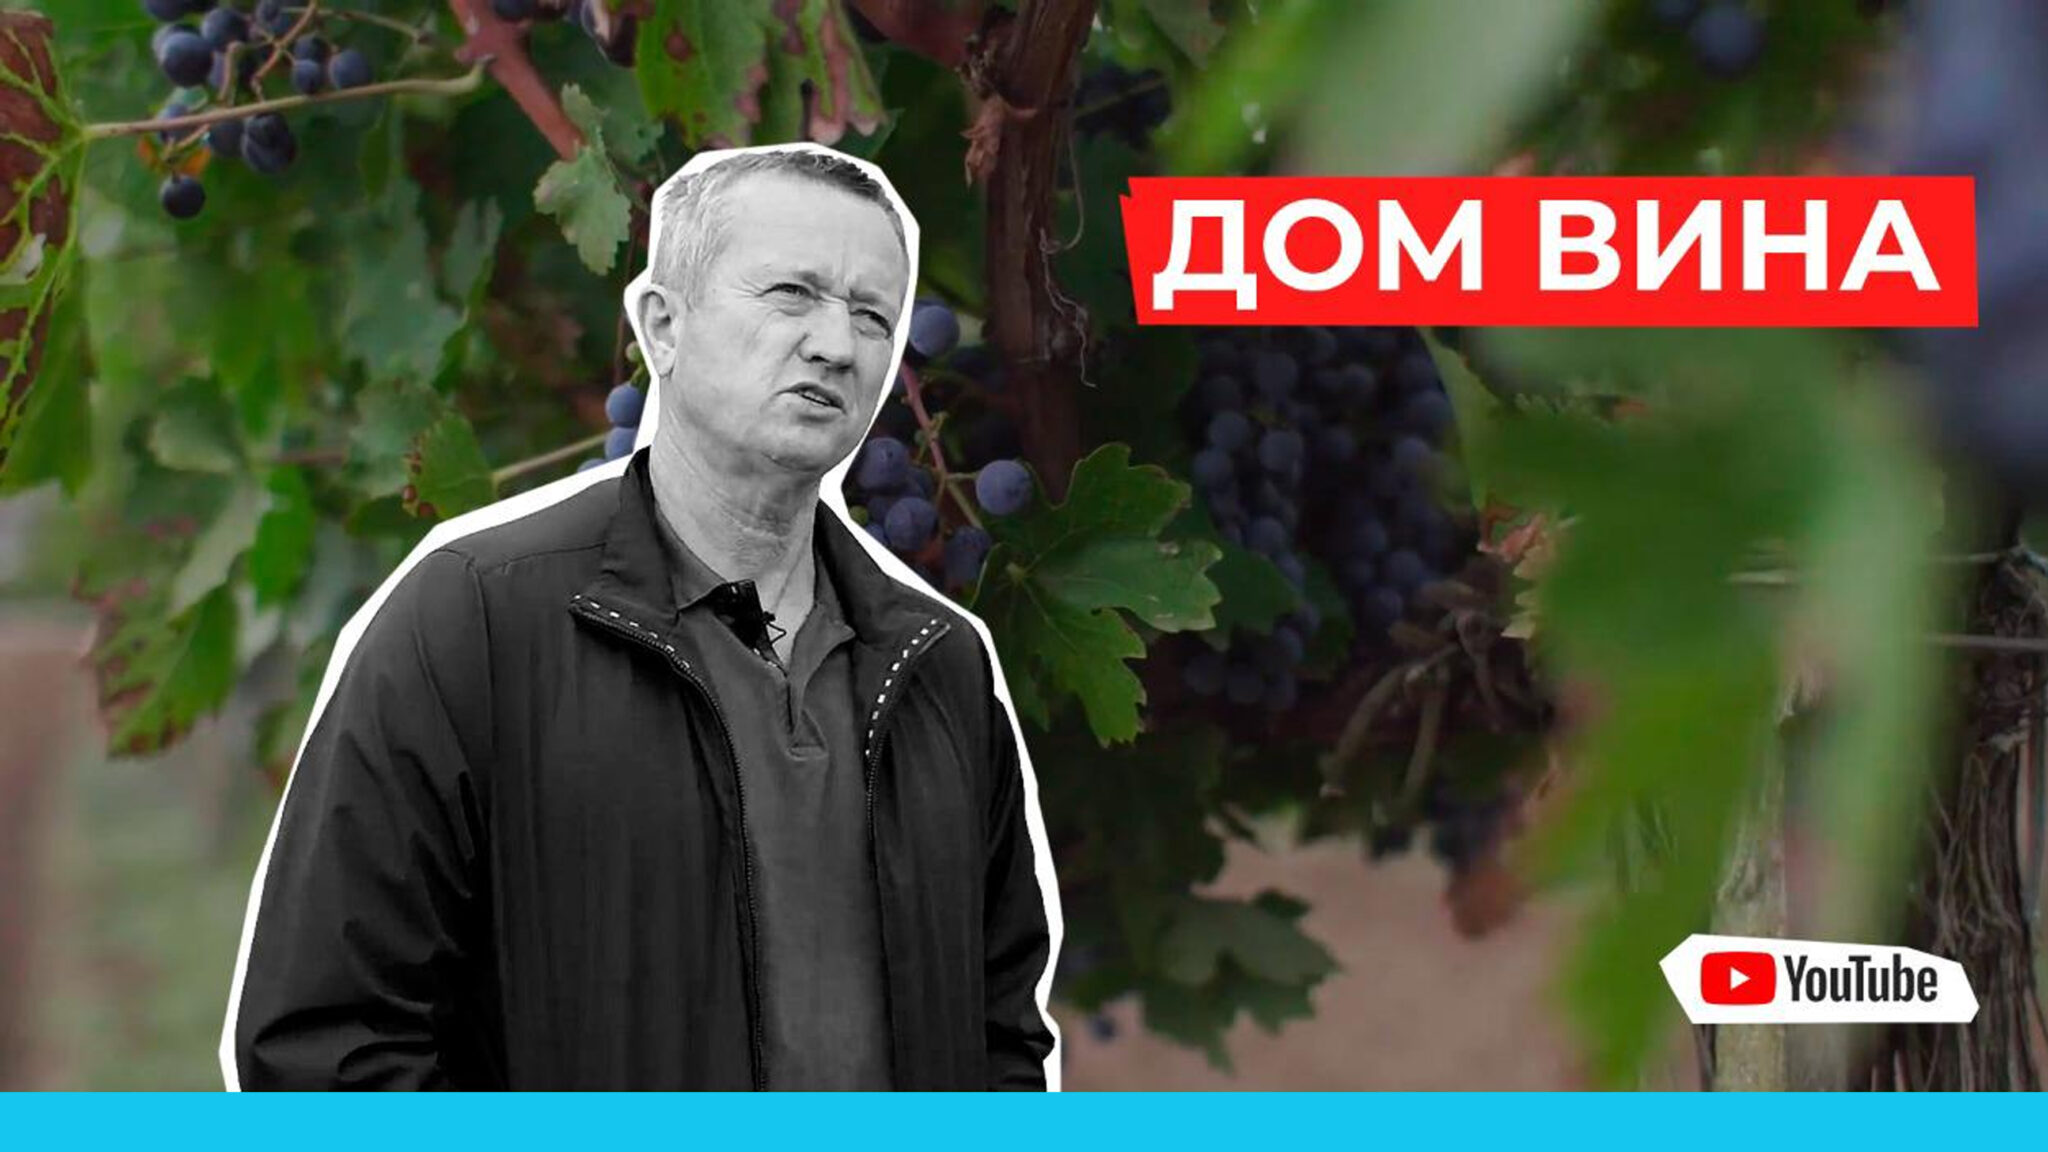 Как построить семейный и экологичный бизнес? Винодельческое хозяйство. Крым